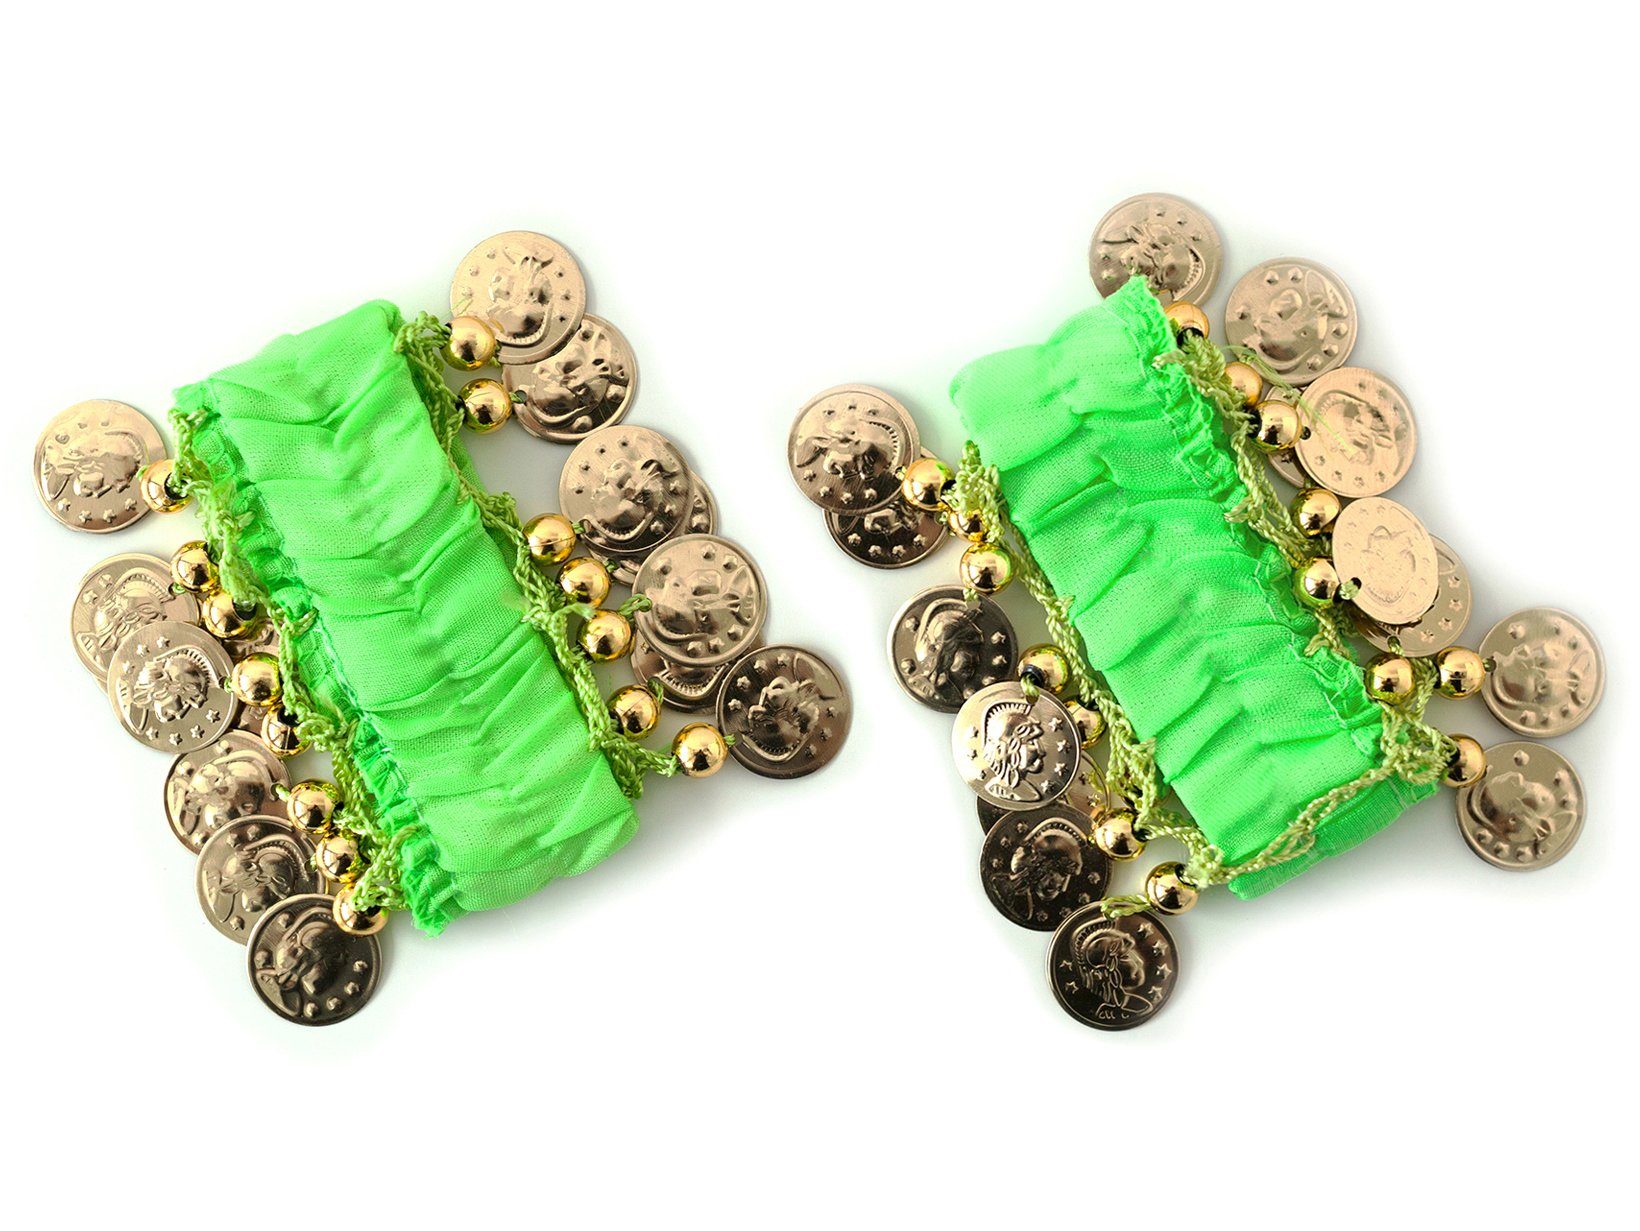 MyBeautyworld24 Armband Belly Dance Handkette (Paar) Fasching Armbänder grün